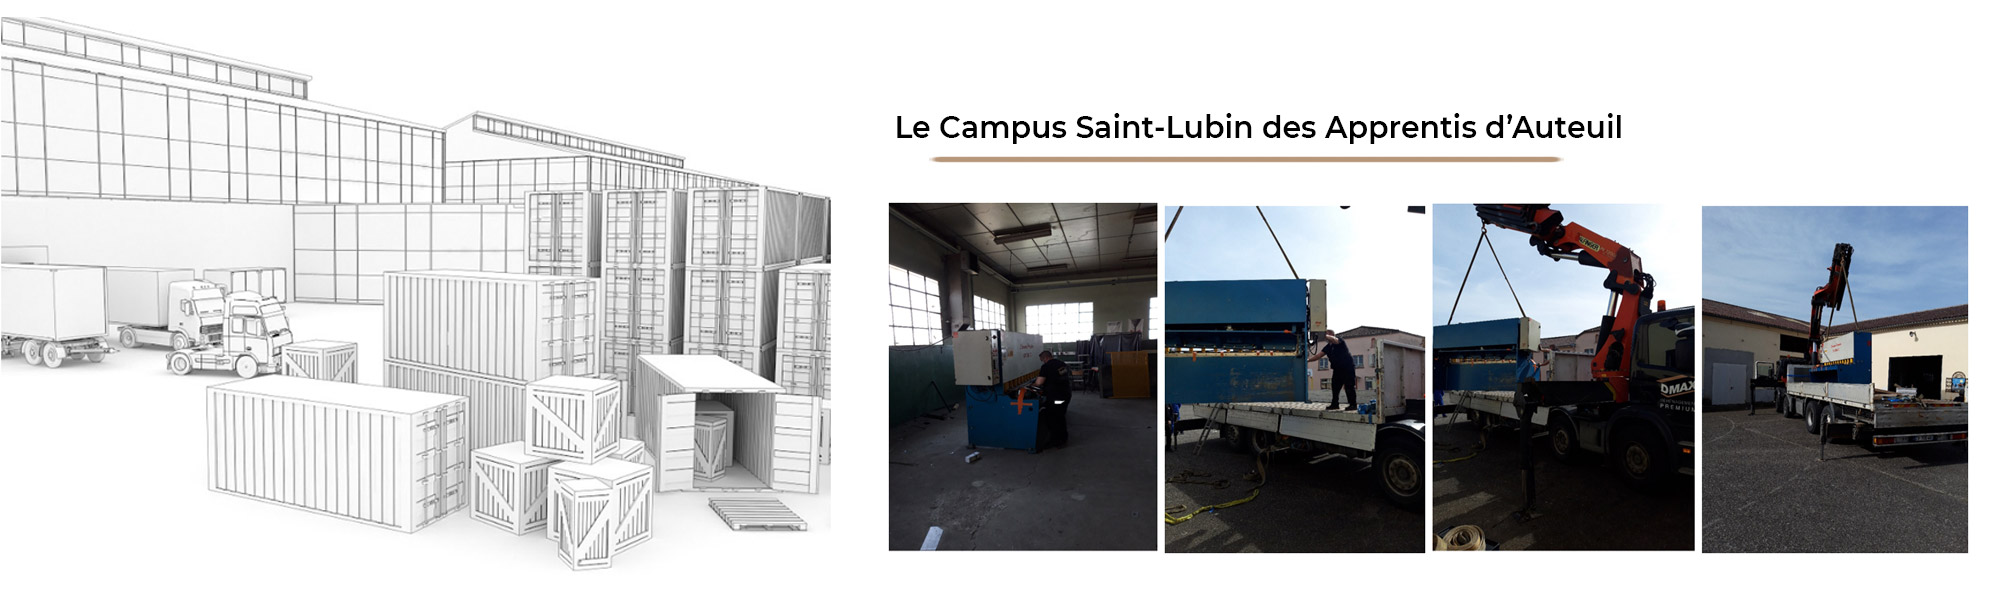 Le Campus Saint-Lubin des Apprentis d’Auteuil a confié son transfert à DMAX Dmax, entreprise de déménagement d'entreprise et particulier